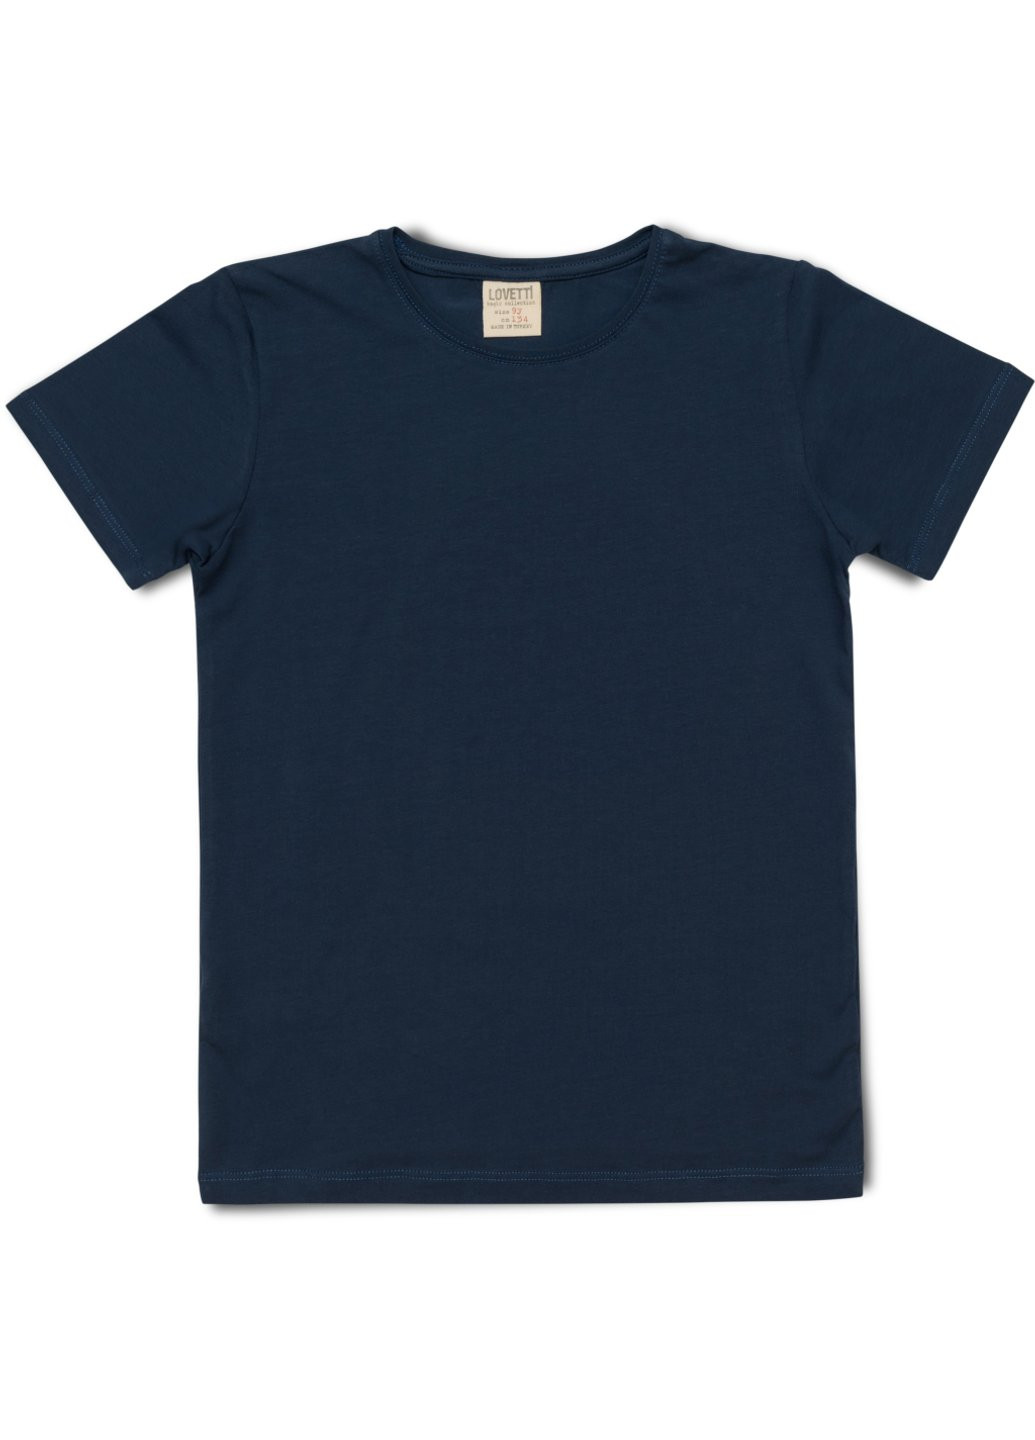 Комбинированная футболка детская базовая (3030-146-blue) Lovetti